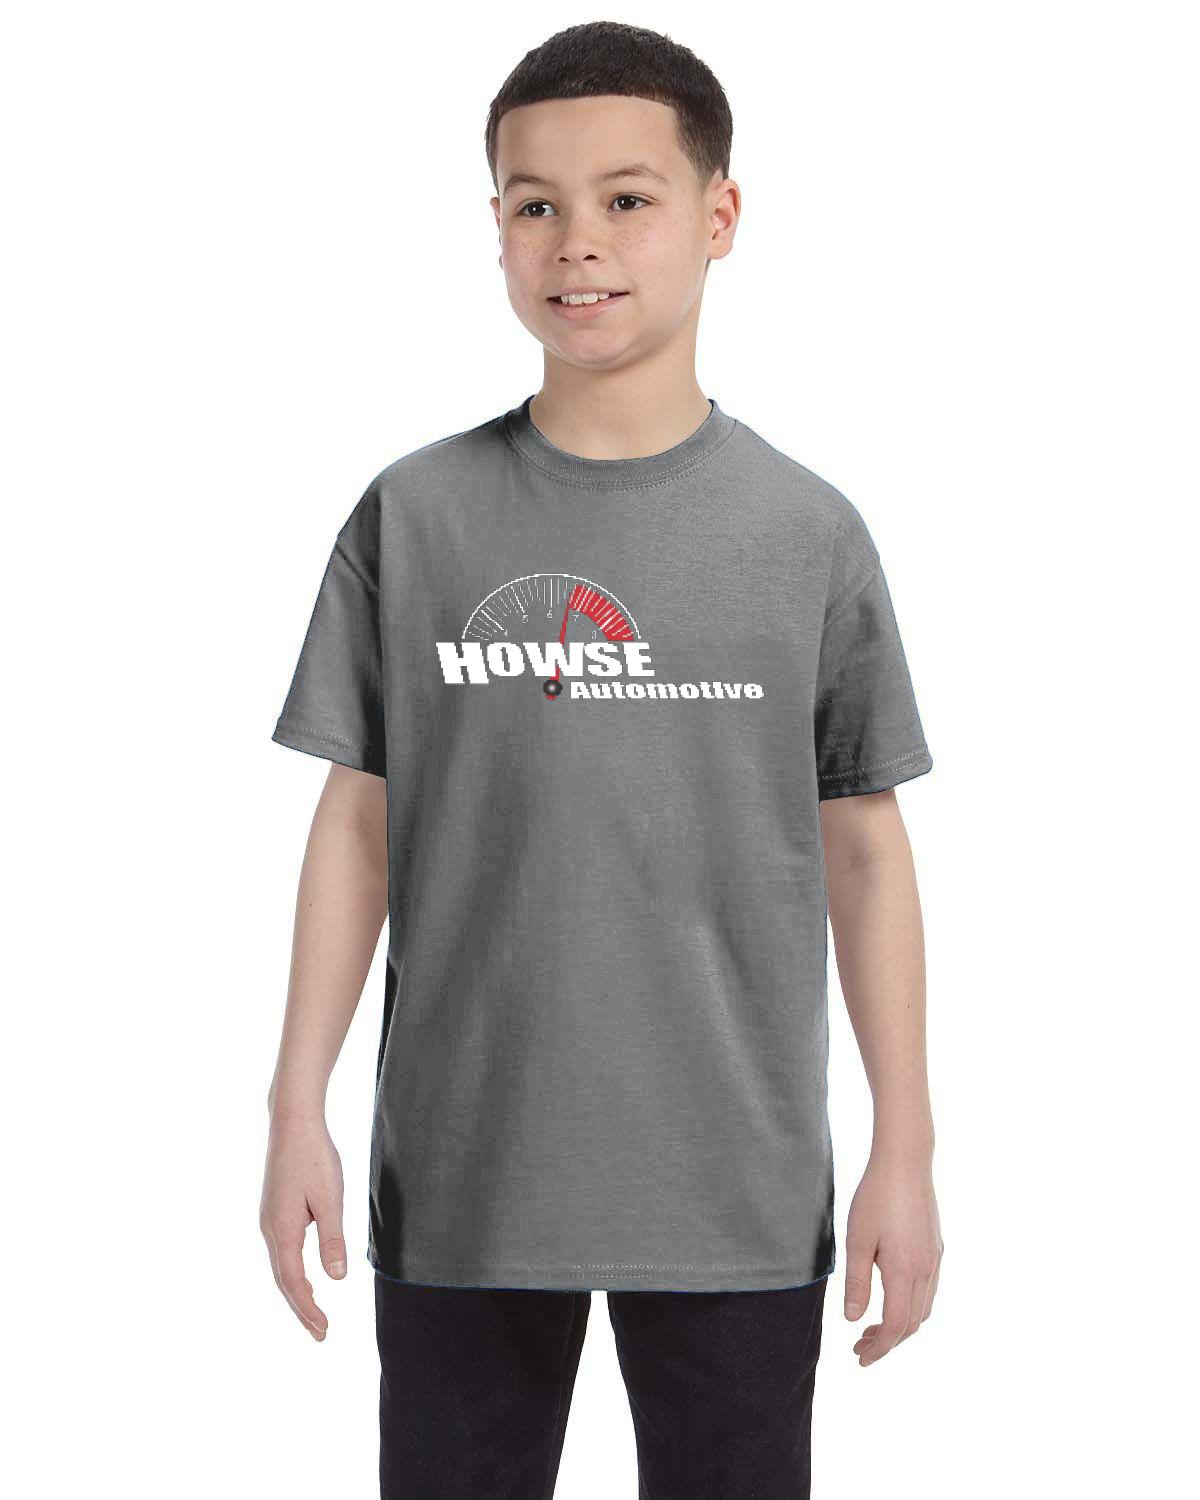 Howse Automotive Kid's T-Shirt